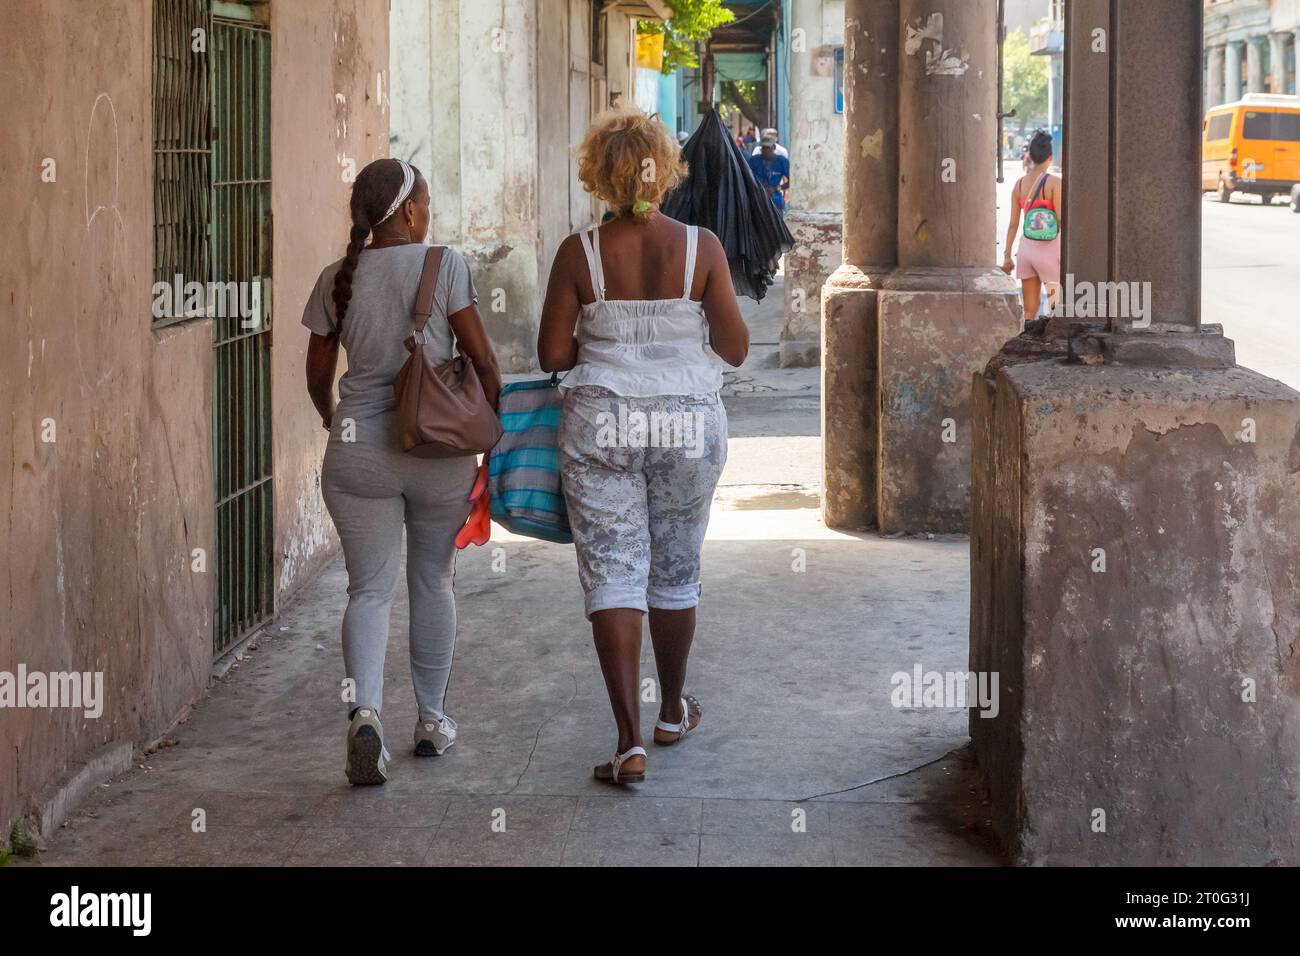 Due donne afro-caraibiche camminano in un portico di un edificio. Le pareti e il pavimento della struttura sembrano sporchi e intemprati. Foto Stock